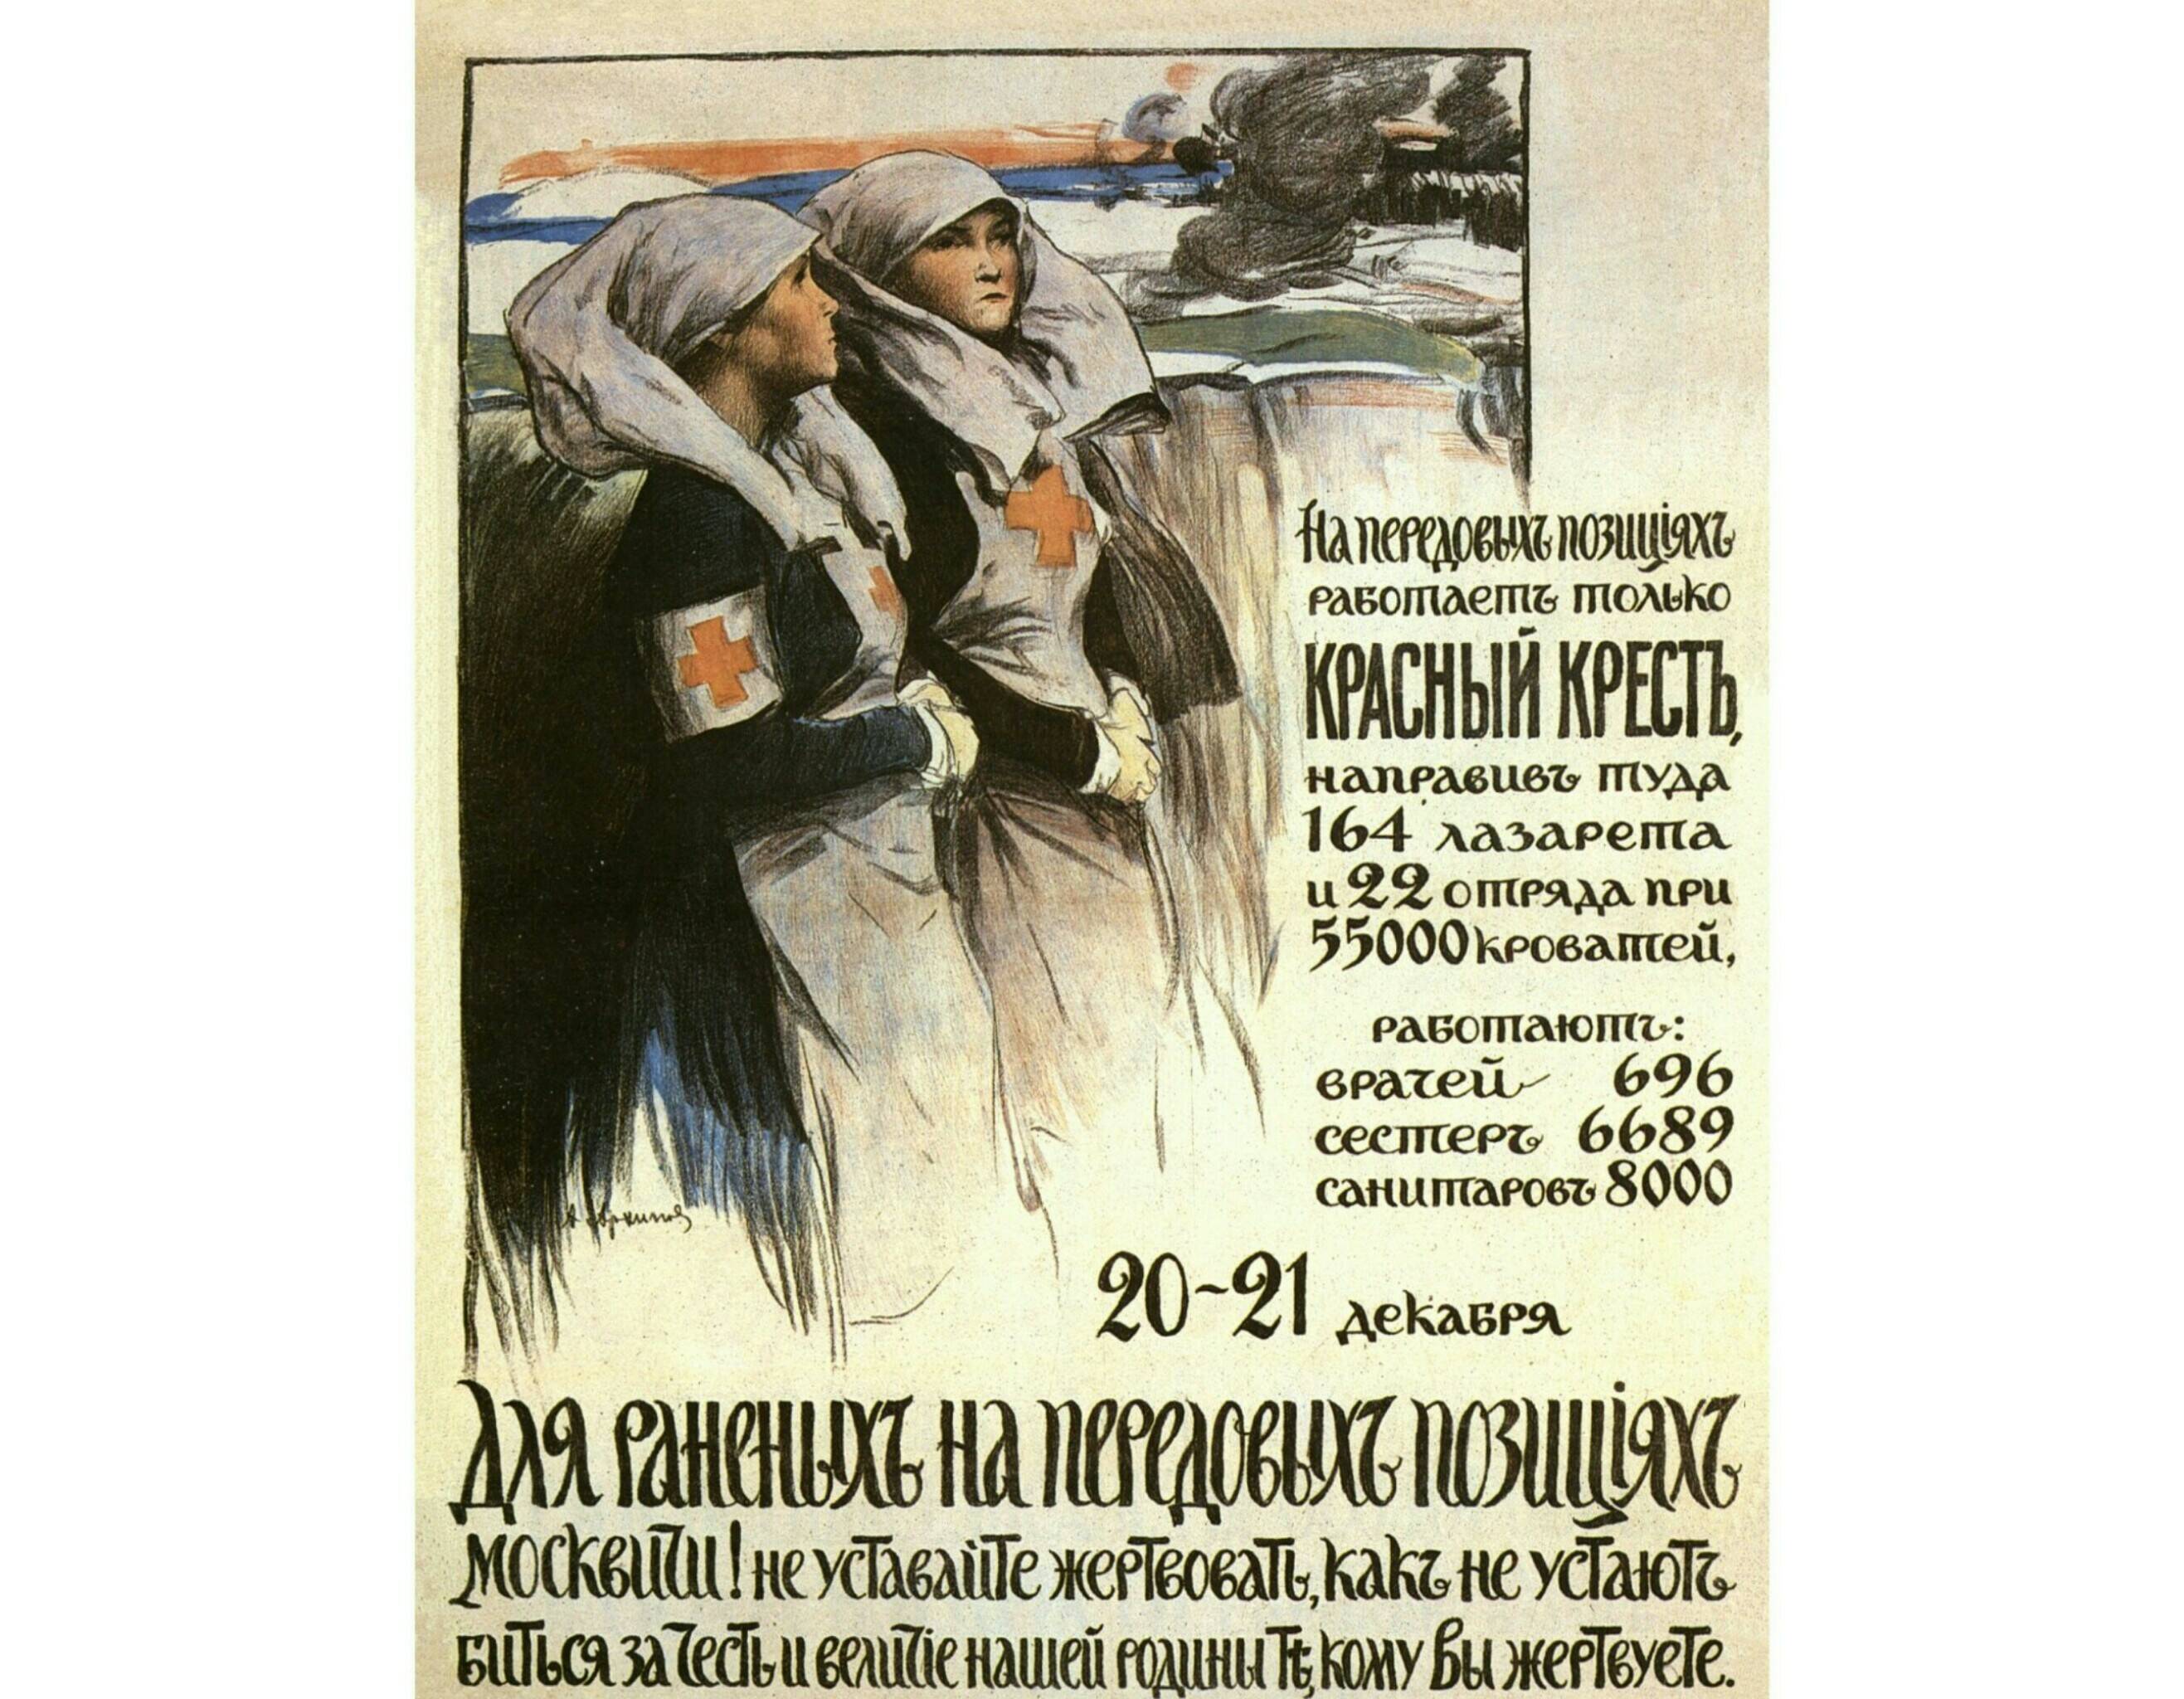 Плакат Русского Красного Креста предрождественской кампании по сбору пожертвований в пользу раненых на фронте. Москва, декабрь 1914.